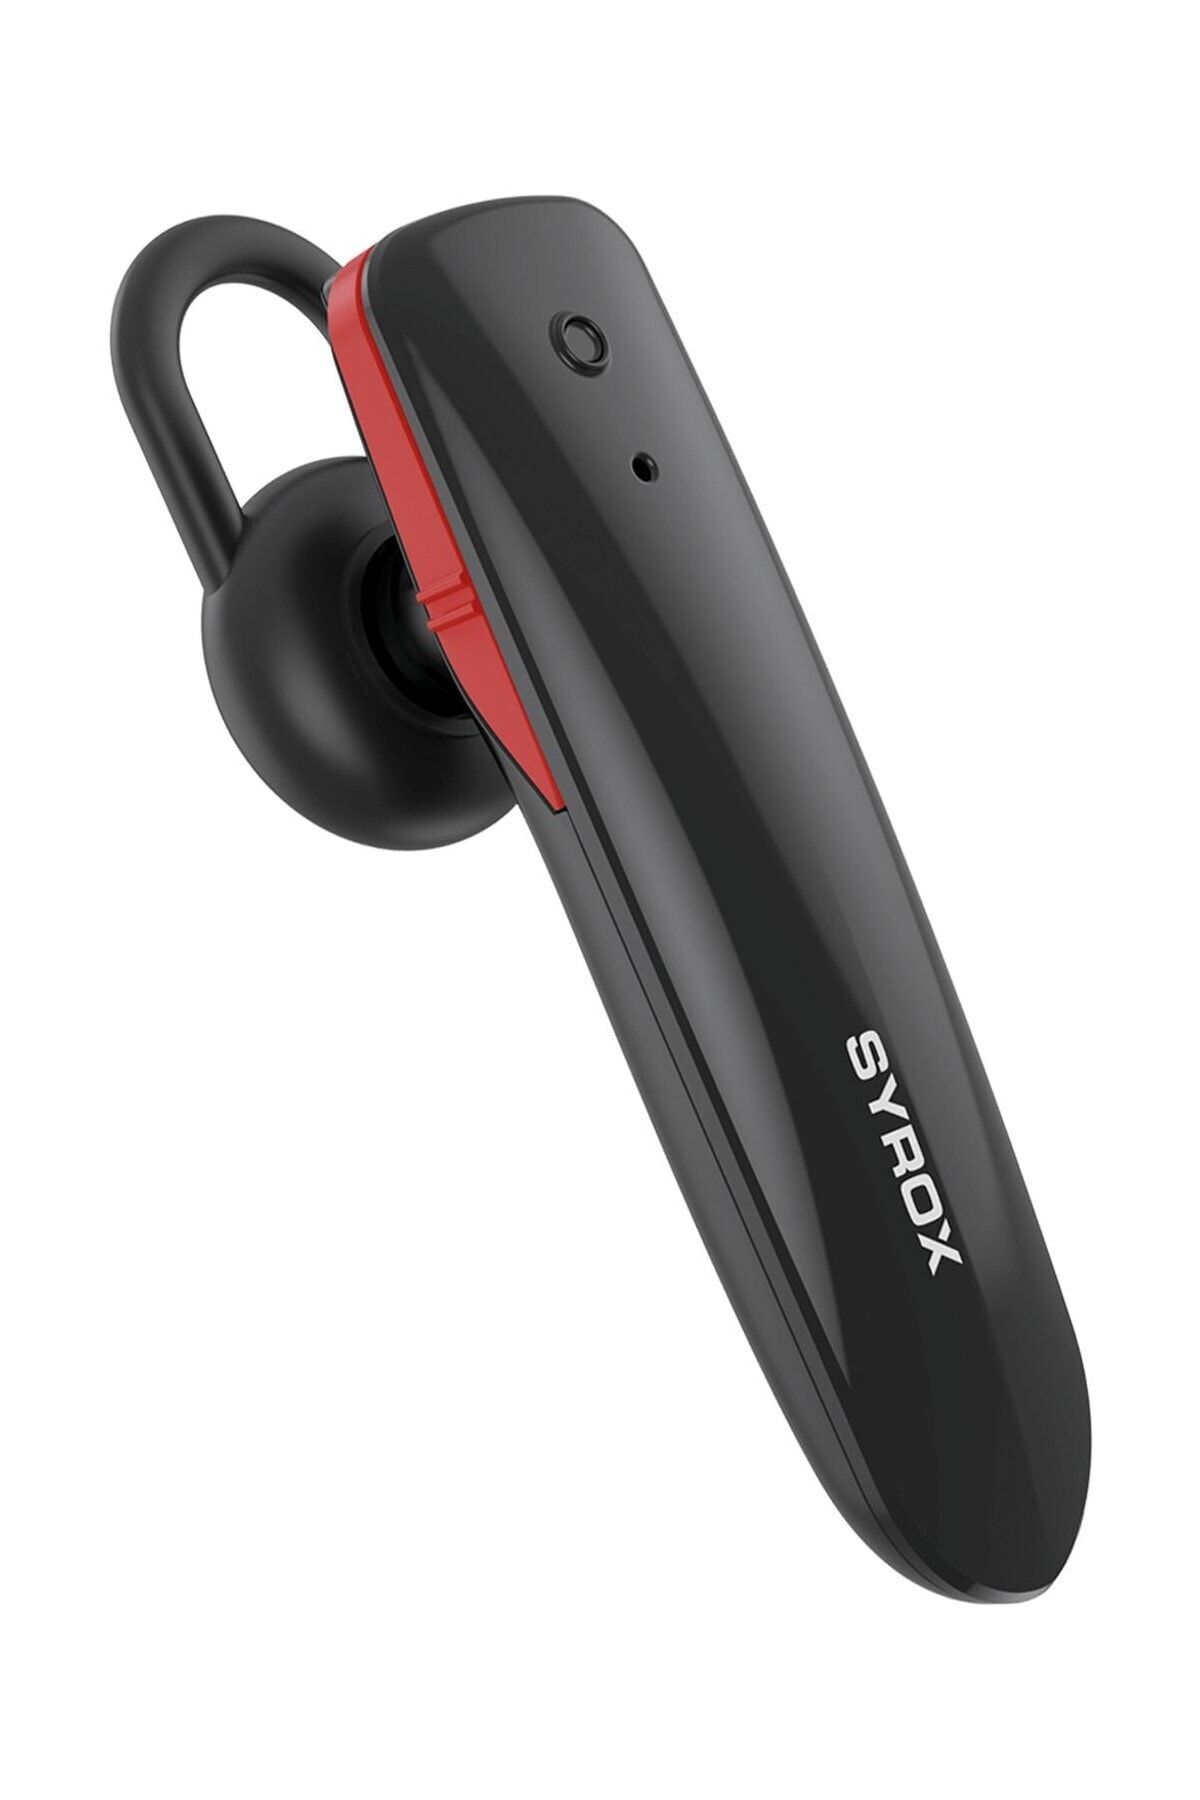 Syrox Mx16 Tek Kulak Iş Ve Spor Kablosuz Bluetooth Kulak Içi Kulaklık